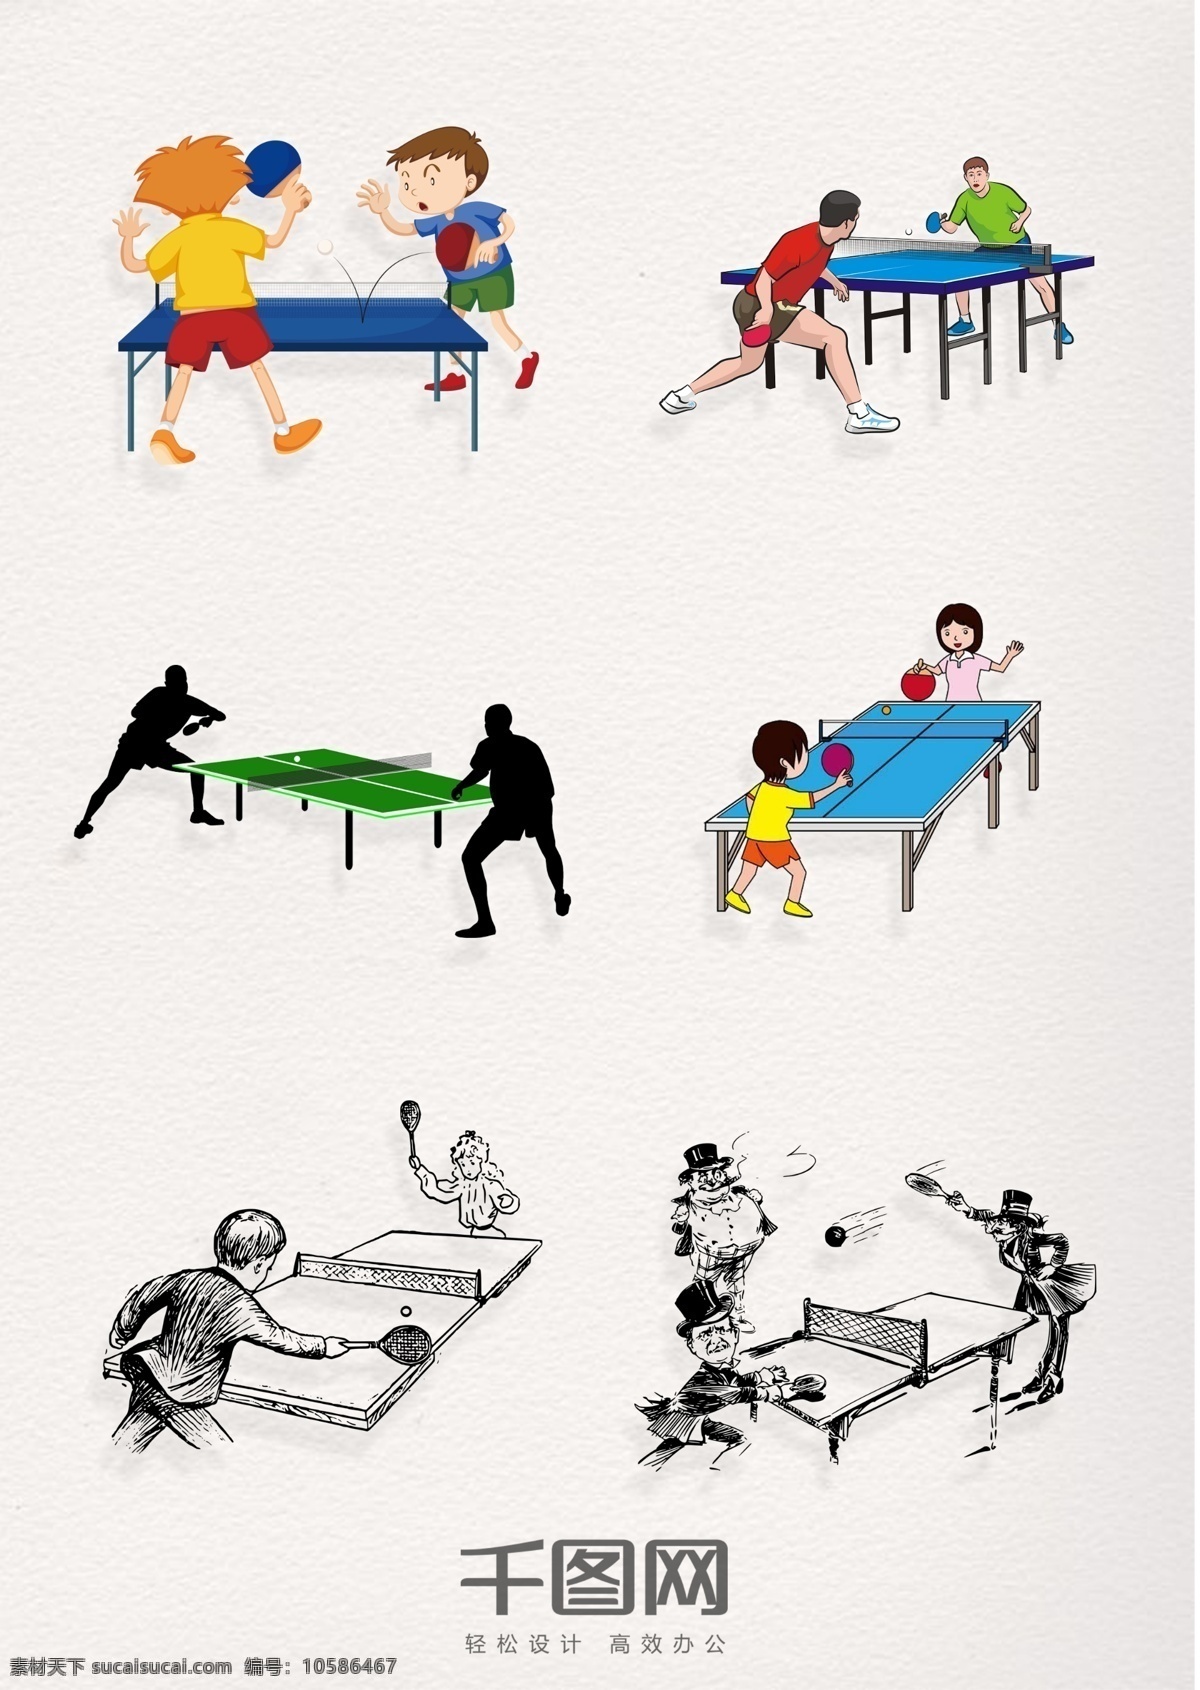 乒乓球 人物 漫画 手绘 元素 图案 乒乓球元素 打乒乓球的人 装饰 手绘打乒乓球 乒乓球运动 打乒乓球